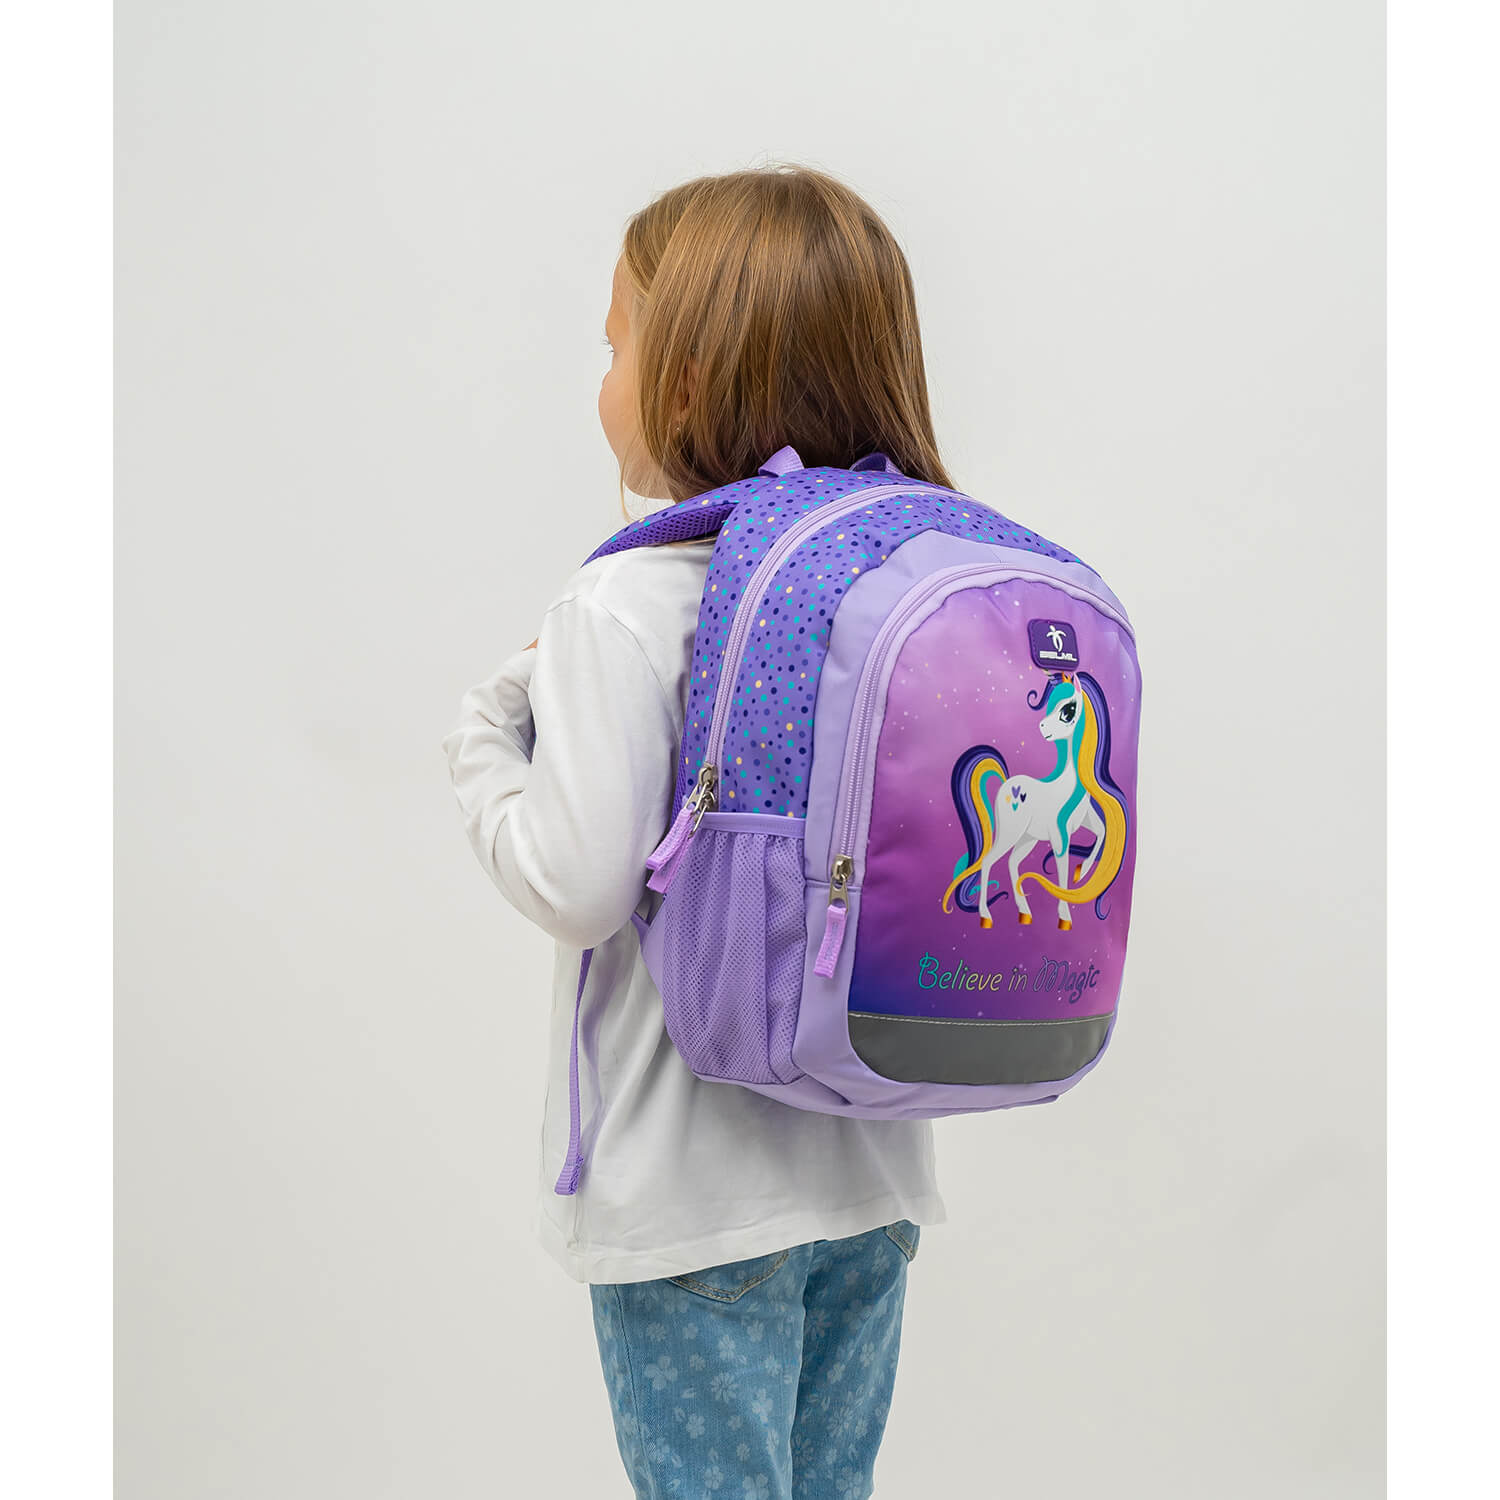 Kiddy Plus Unicorn Purple Kinderrucksack